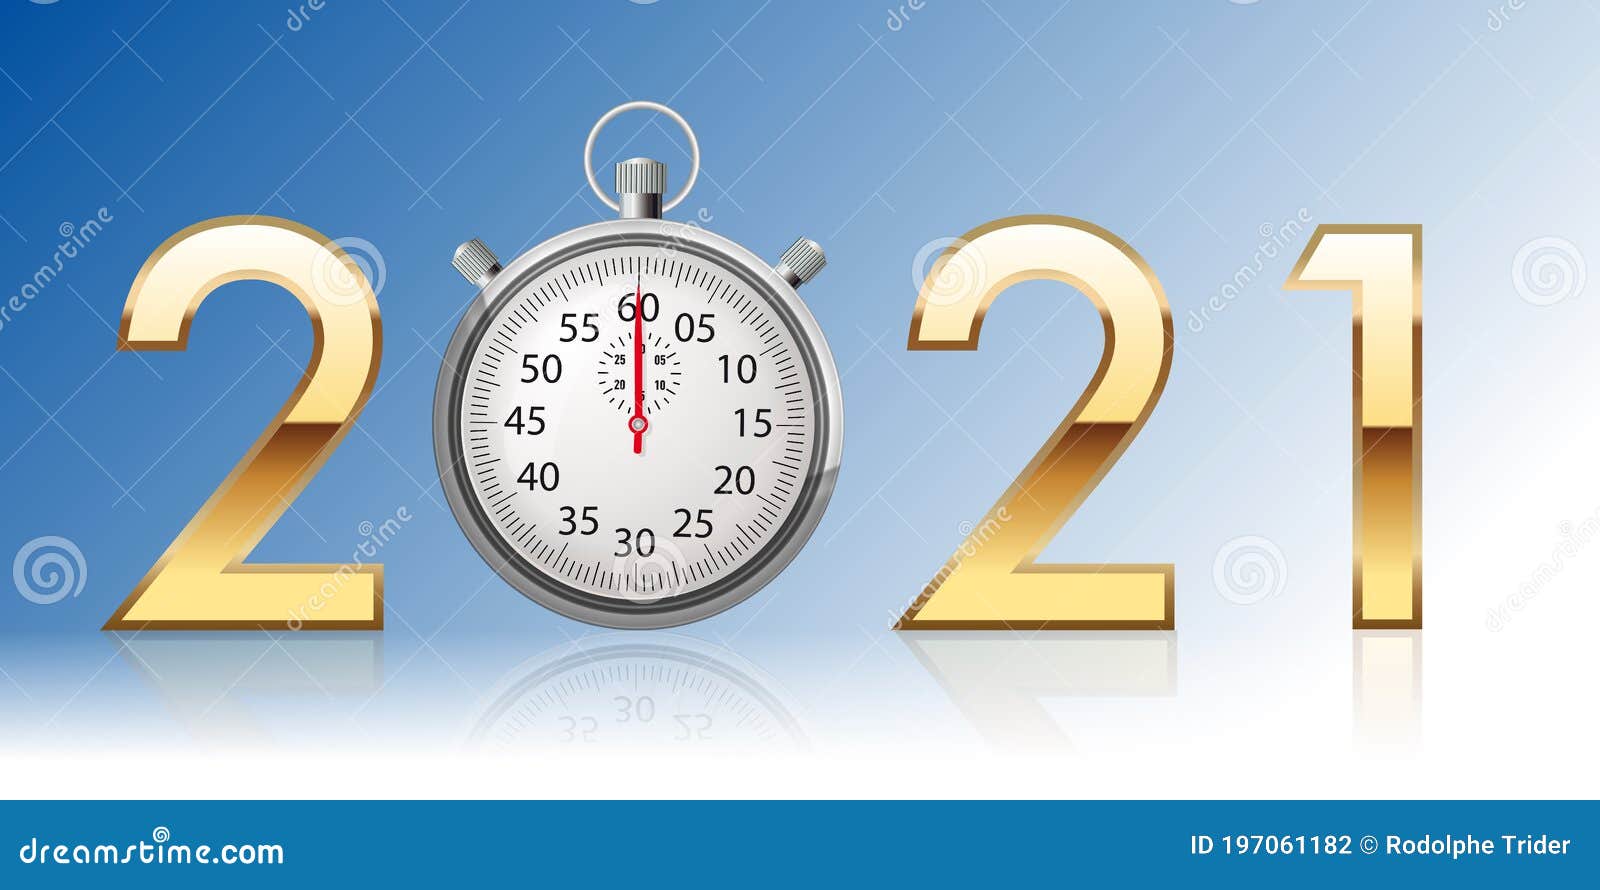 2021sur le thÃÂ¨me du temps qui passe avec ÃÂ©crit en chiffre dorÃÂ© avec un chronomÃÂ¨tre ÃÂ  la place du zÃÂ©ro.